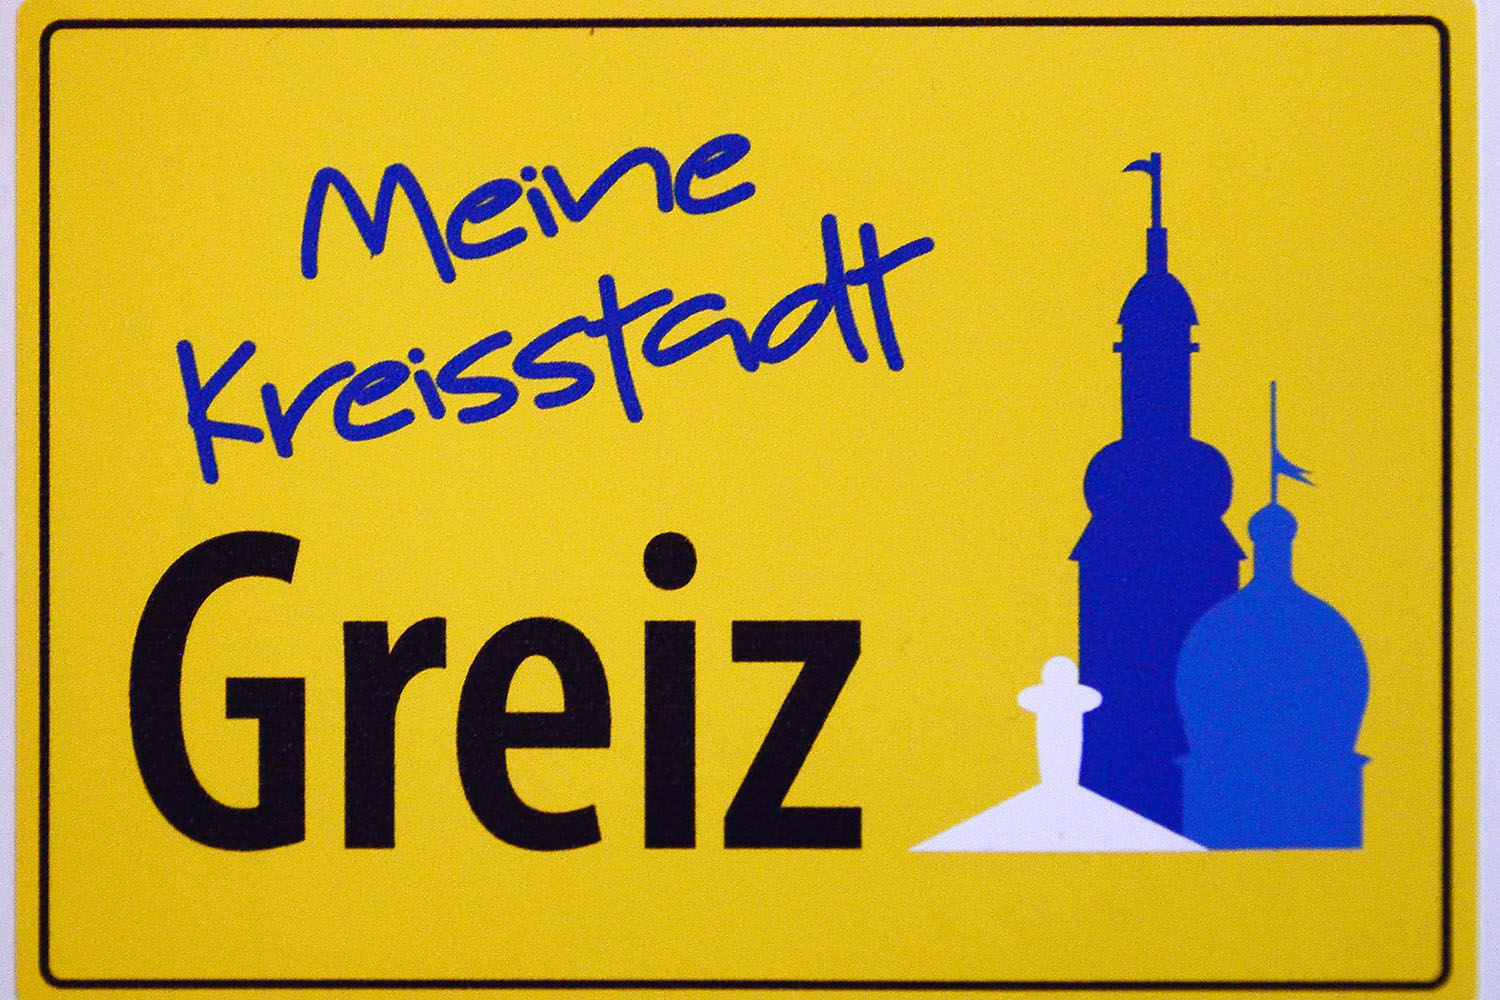 Stadtrat Greiz positioniert sich mehrheitlich zum Erhalt der Kreisstadt Greiz